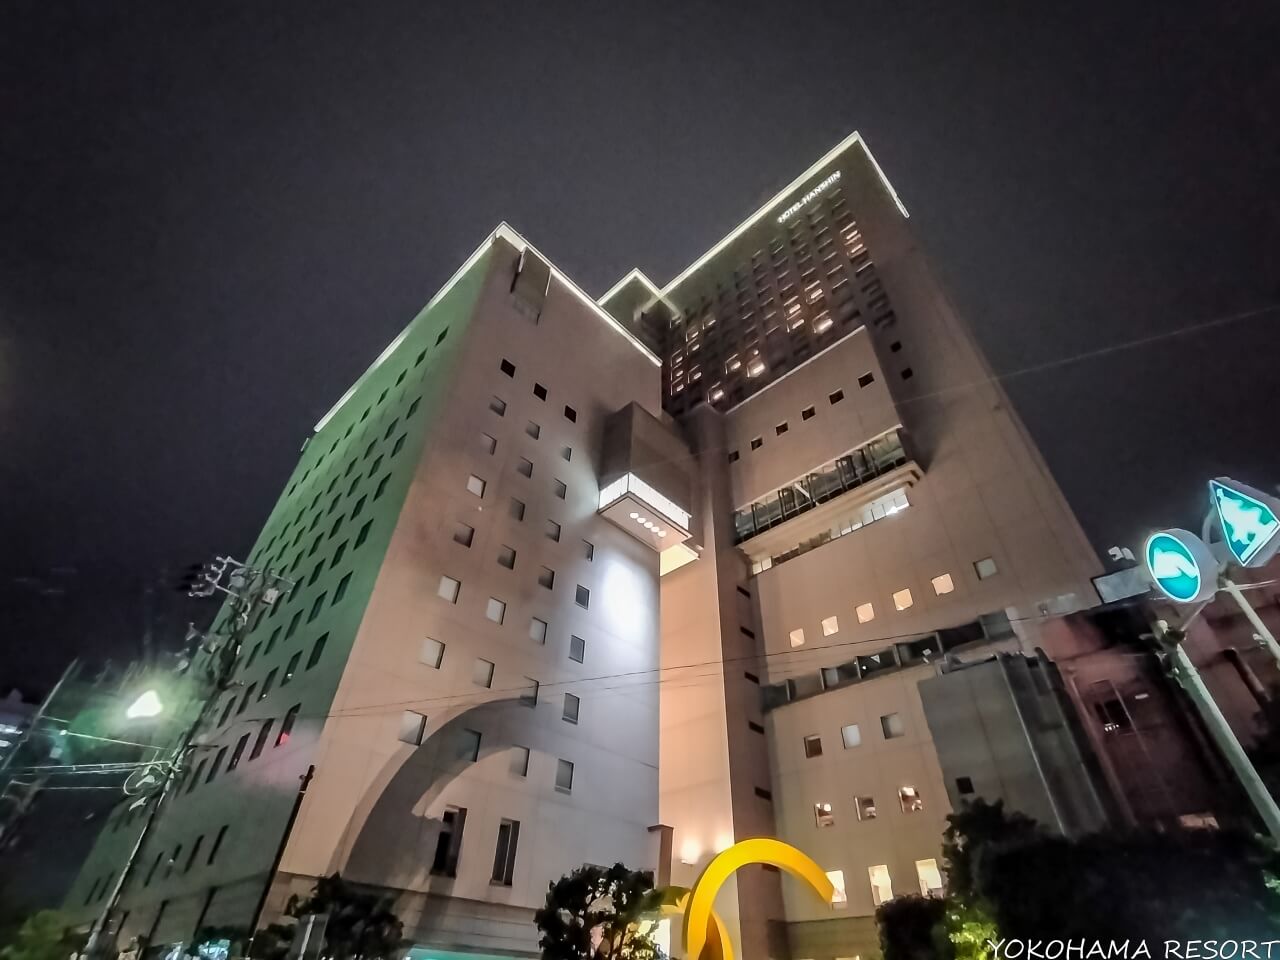 夜ライトアップされたホテル建物